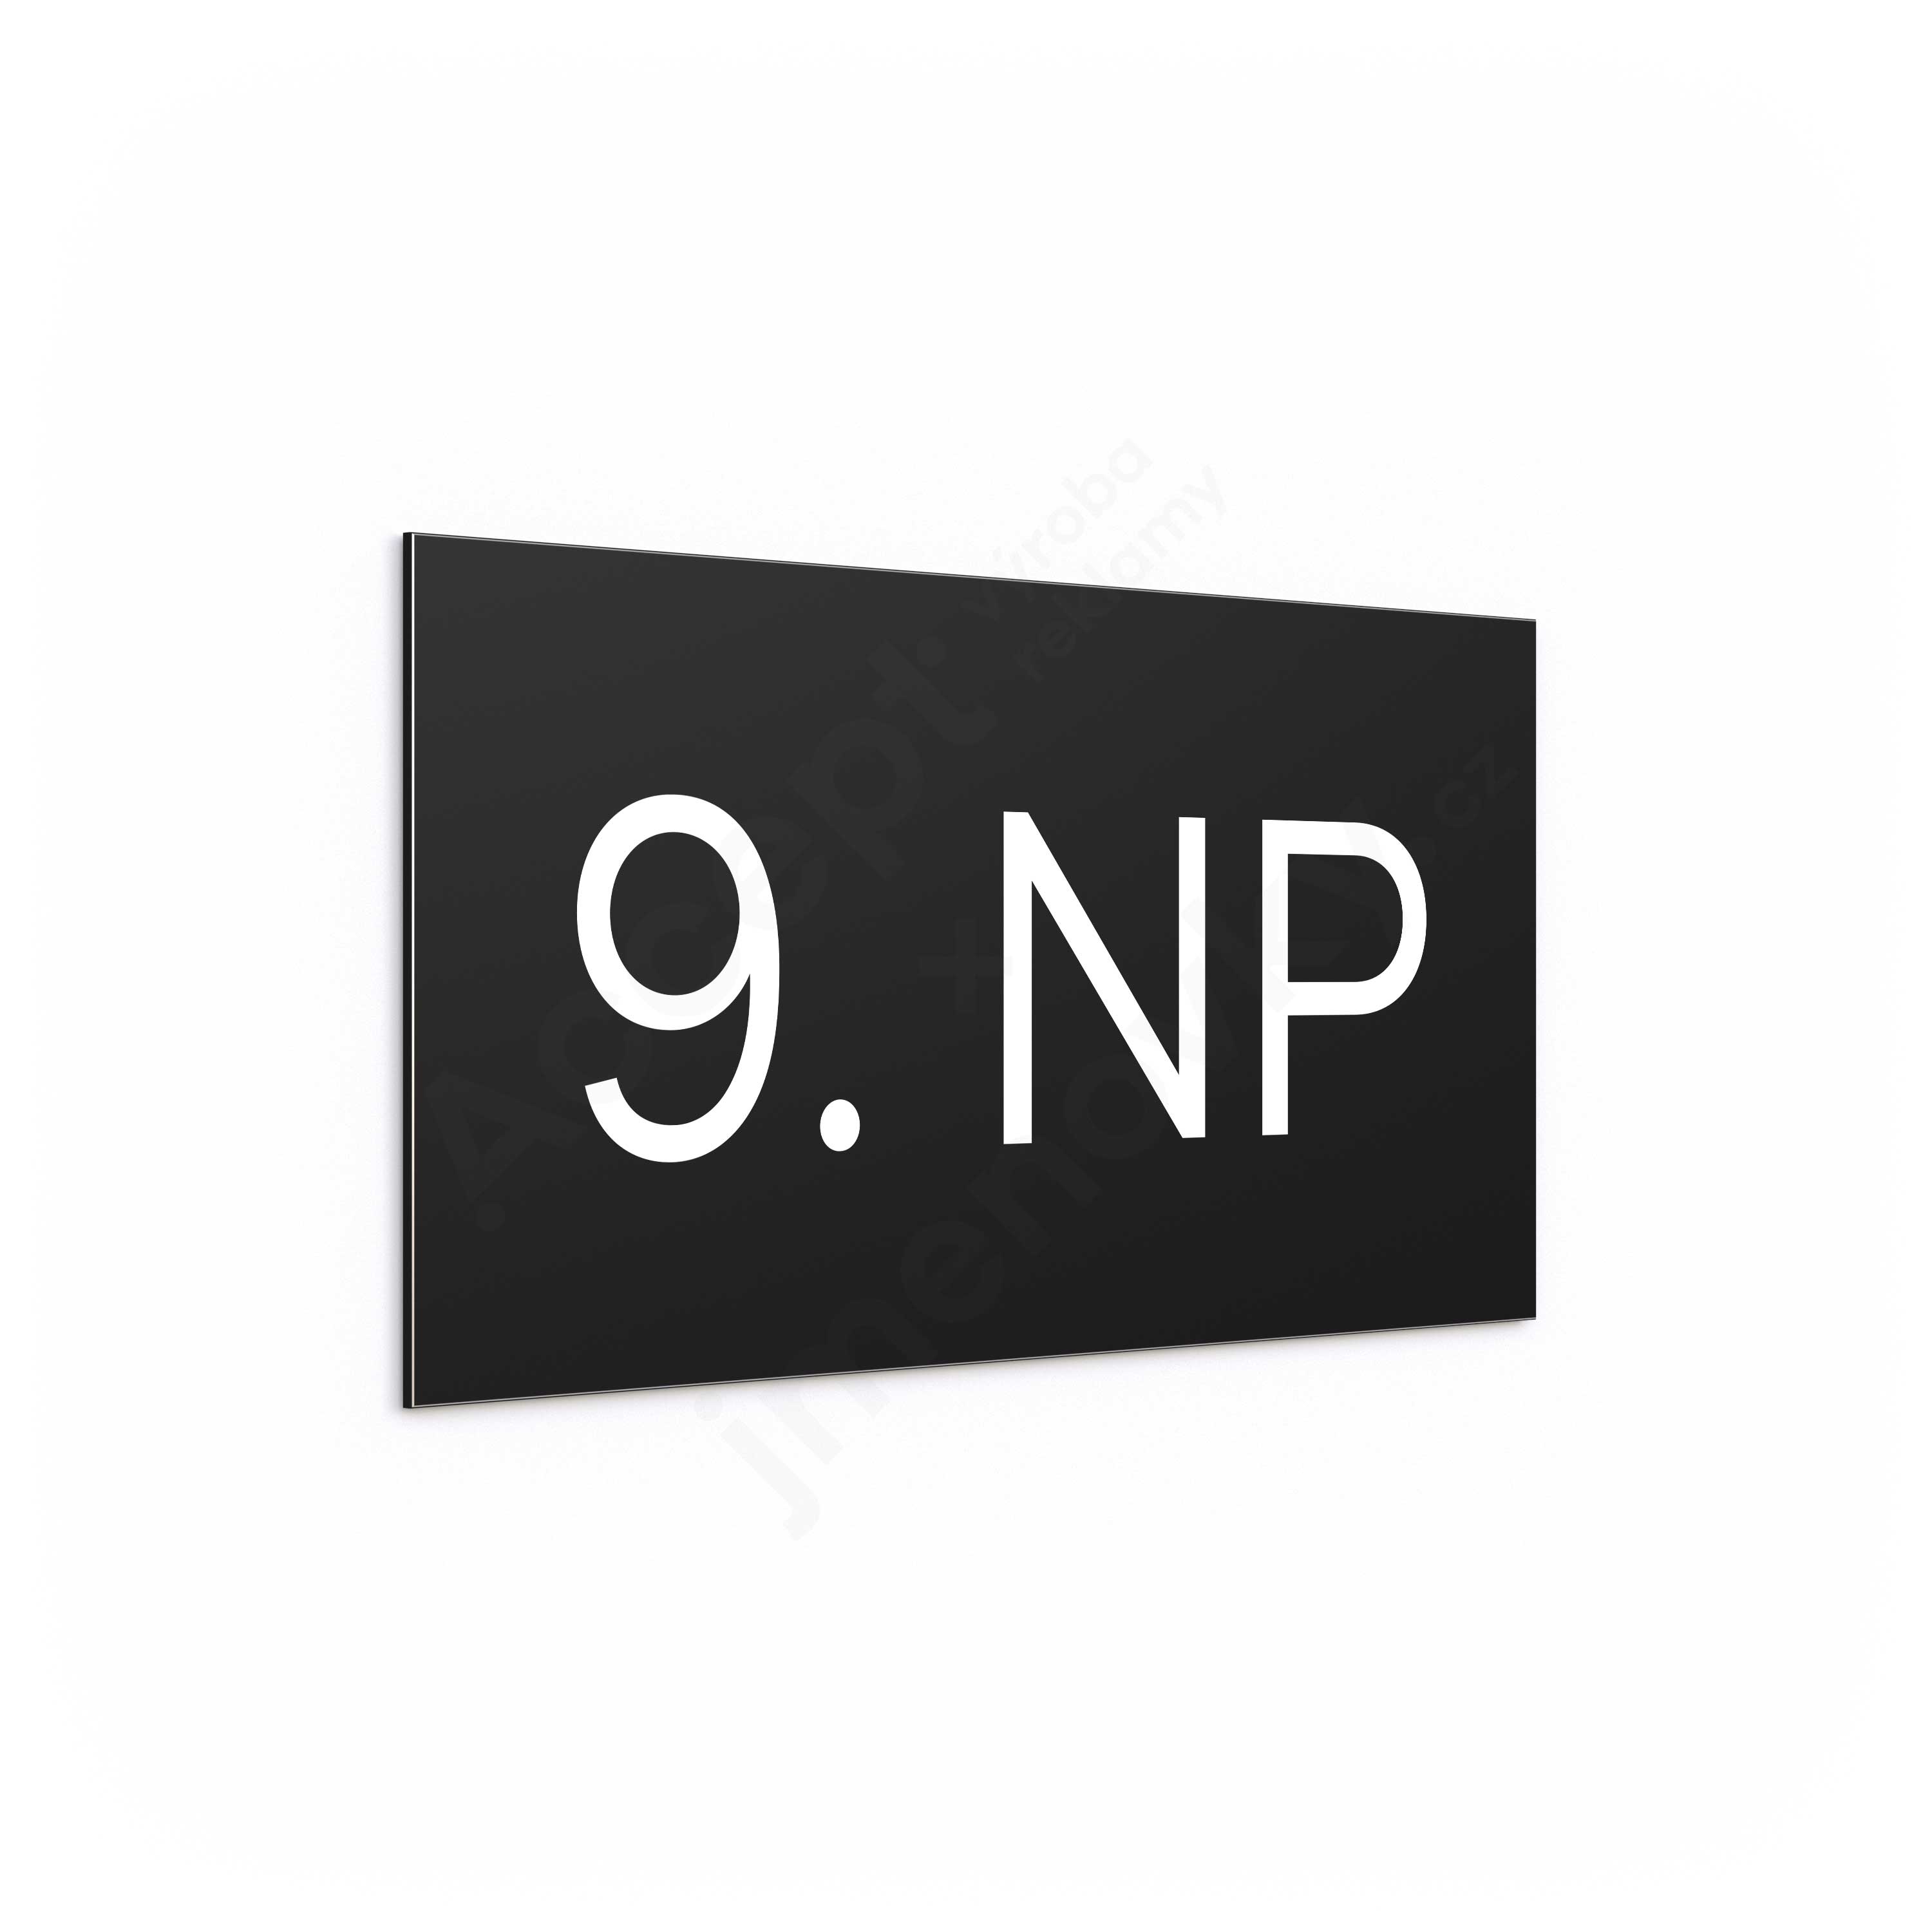 Označení podlaží "9. NP" - černá tabulka - bílý popis